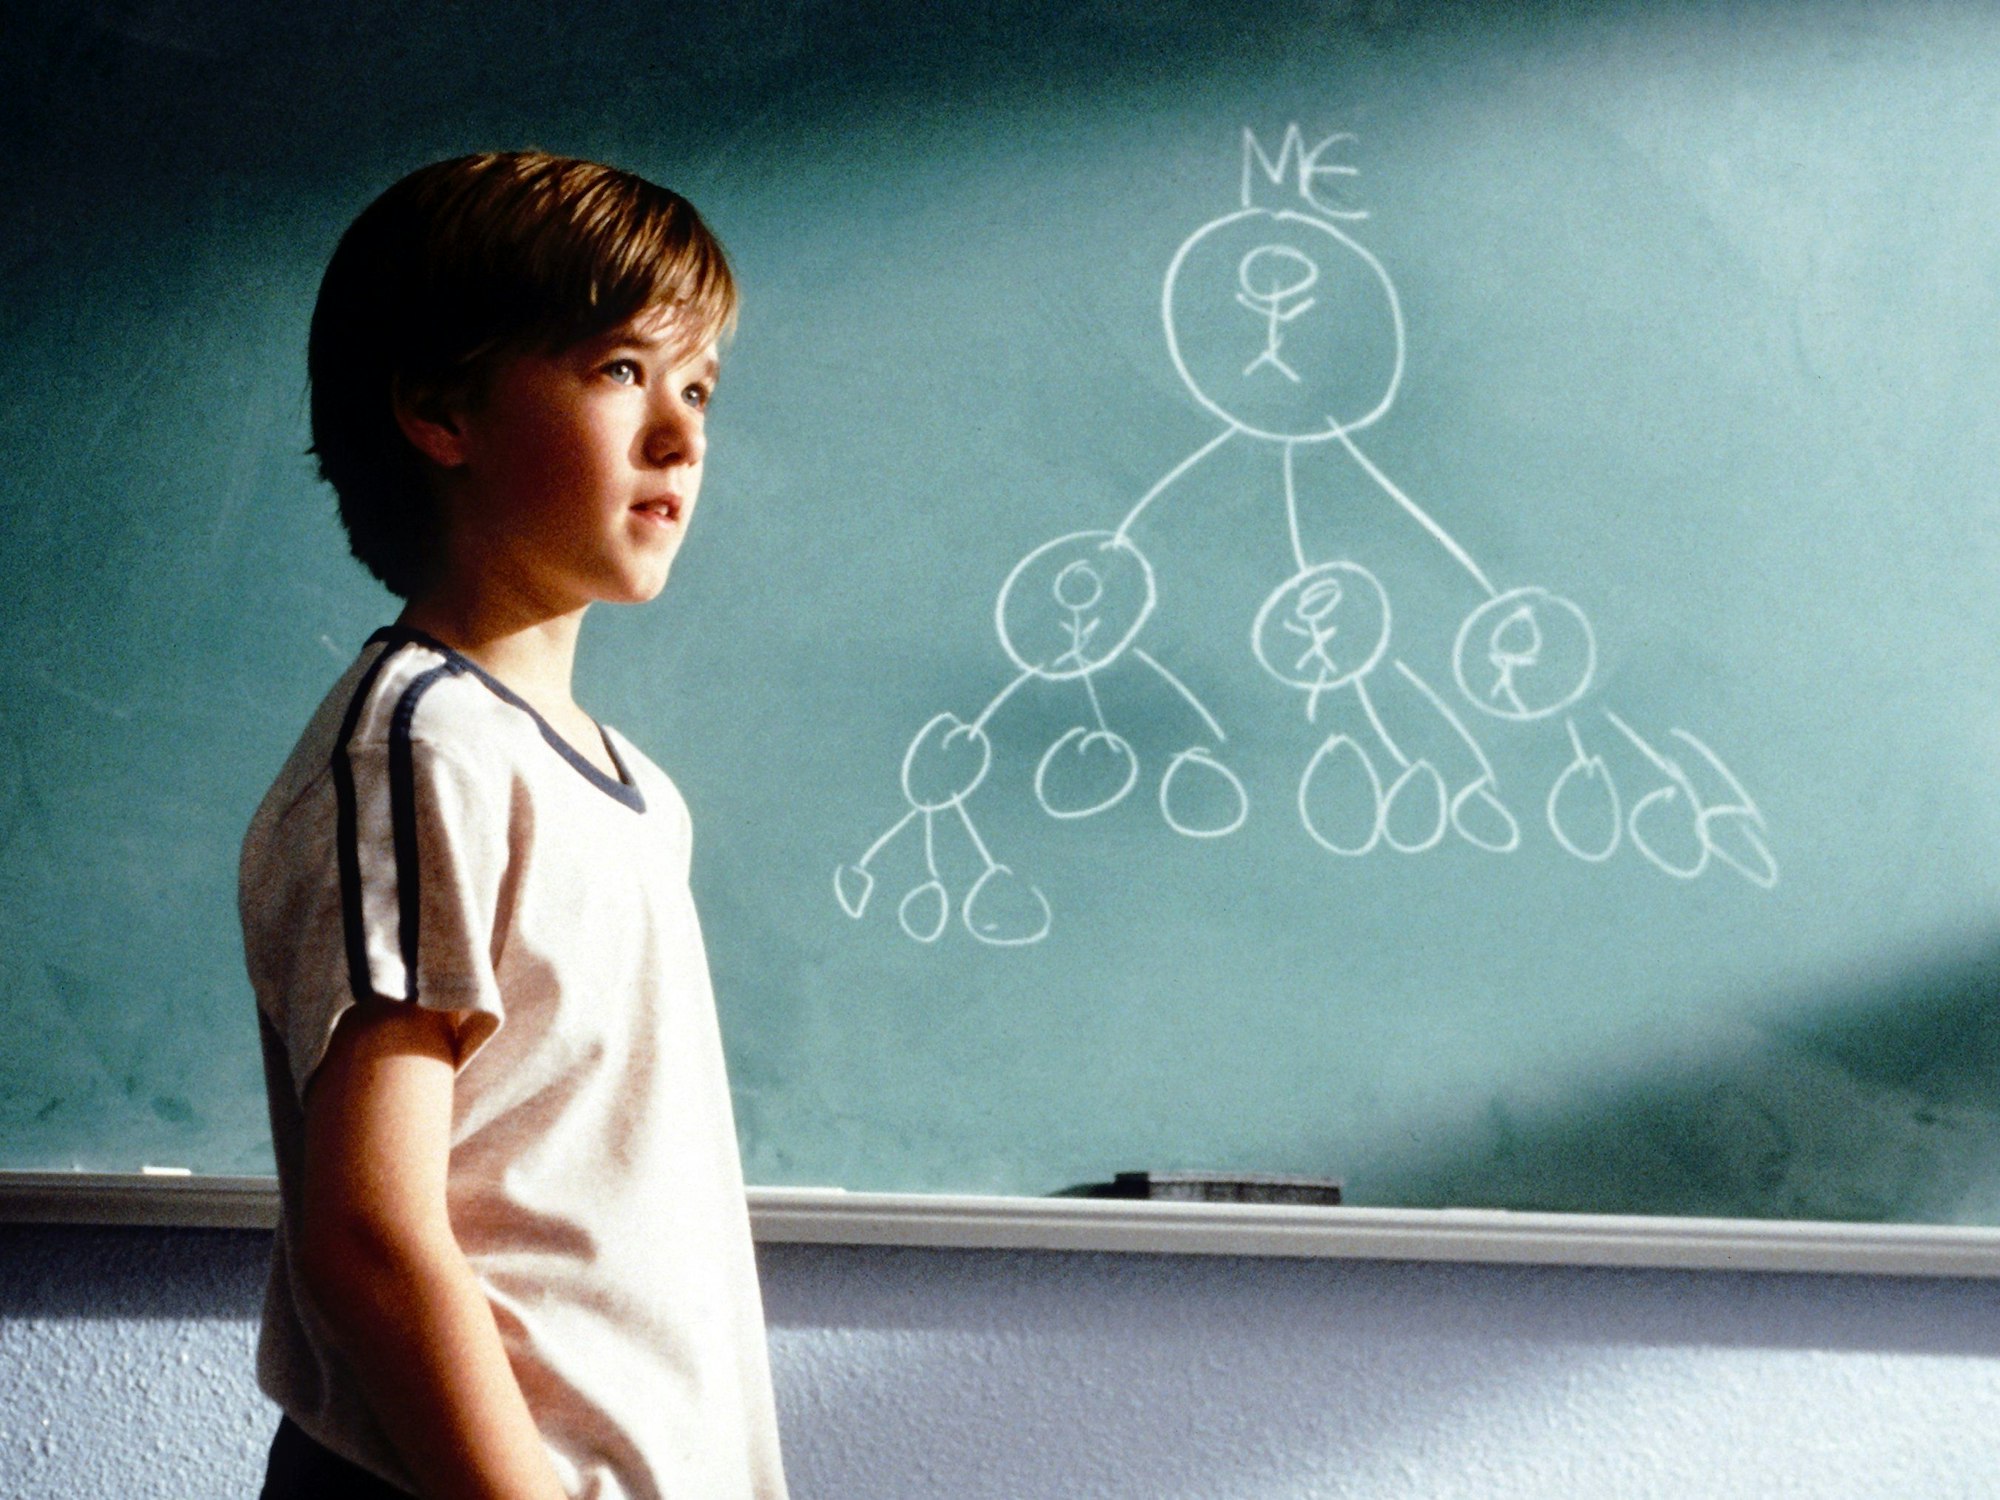 Der kleine Trevor McKinney (Haley Joel Osment) erläutert in dem neuen Kinofilm "Das Glücksprinzip" (Szenenfoto) an einer Schultafel seine Methode, die Welt zu verbessern.